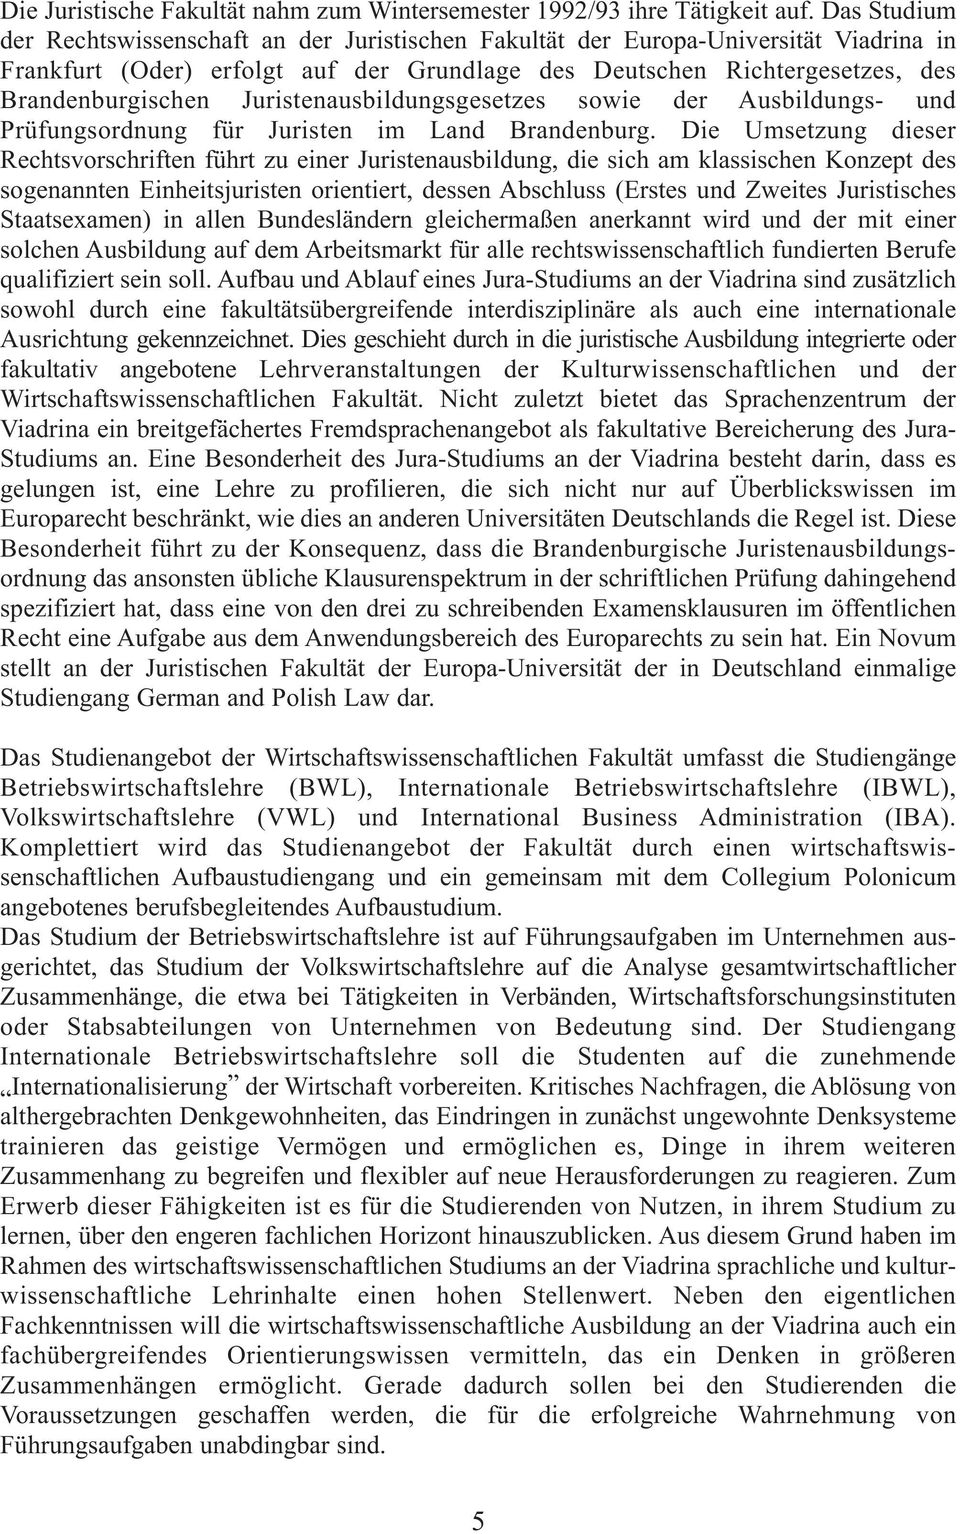 Juristenausbildungsgesetzes sowie der Ausbildungs- und Prüfungsordnung für Juristen im Land Brandenburg.